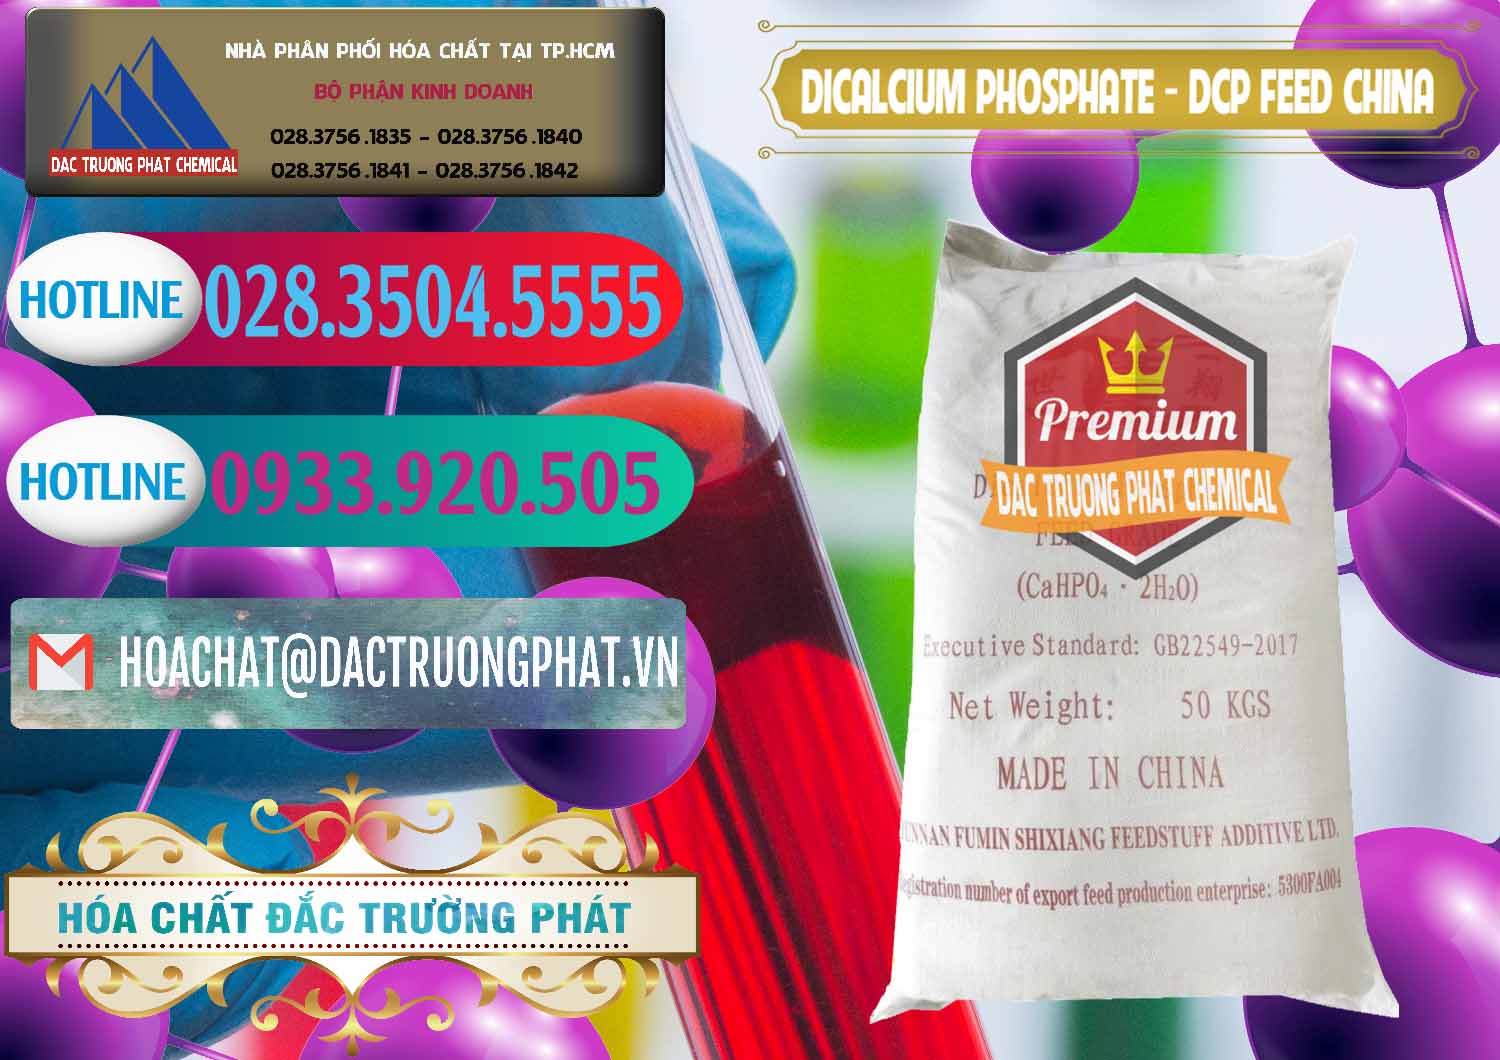 Nhà cung cấp _ bán Dicalcium Phosphate - DCP Feed Grade Trung Quốc China - 0296 - Phân phối - cung cấp hóa chất tại TP.HCM - truongphat.vn